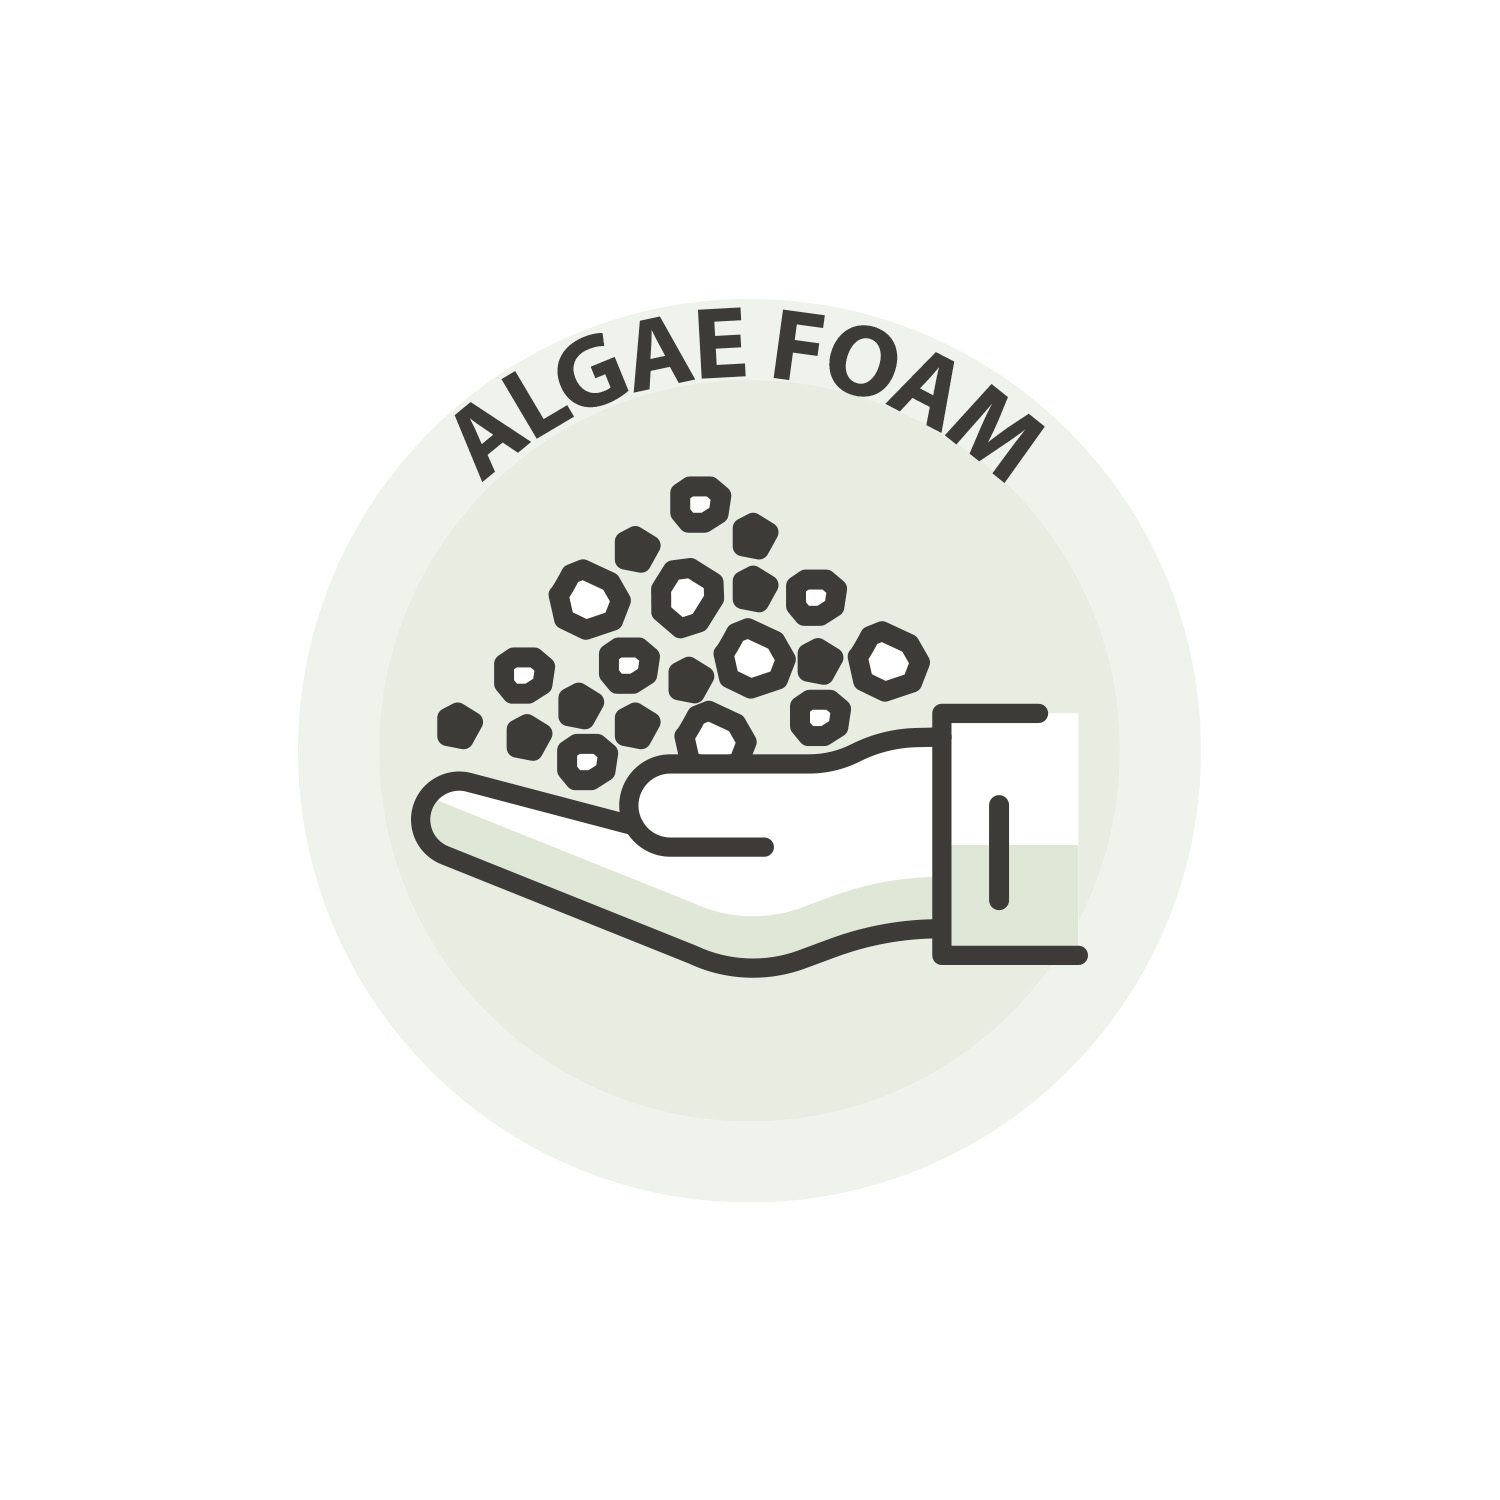 Algae foam